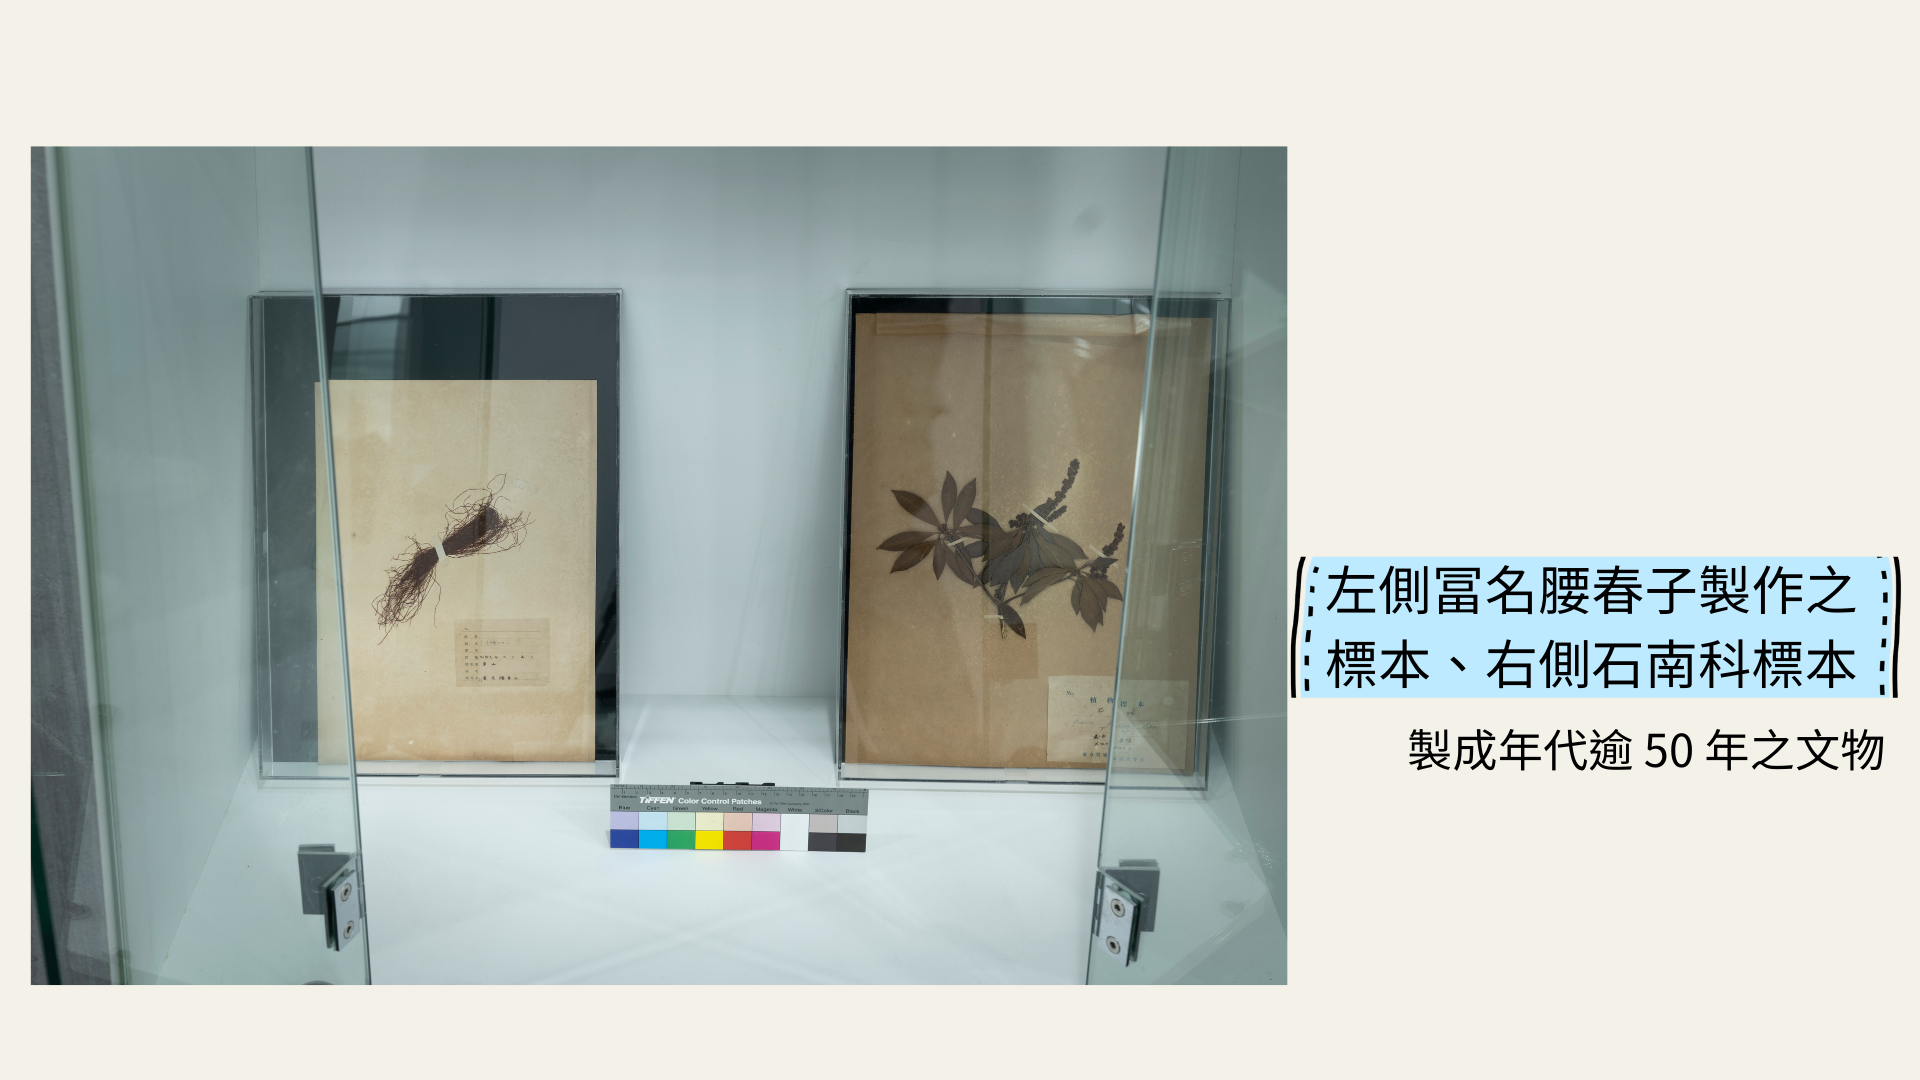 左側冨名腰春子製作之標本、右側石南科標本